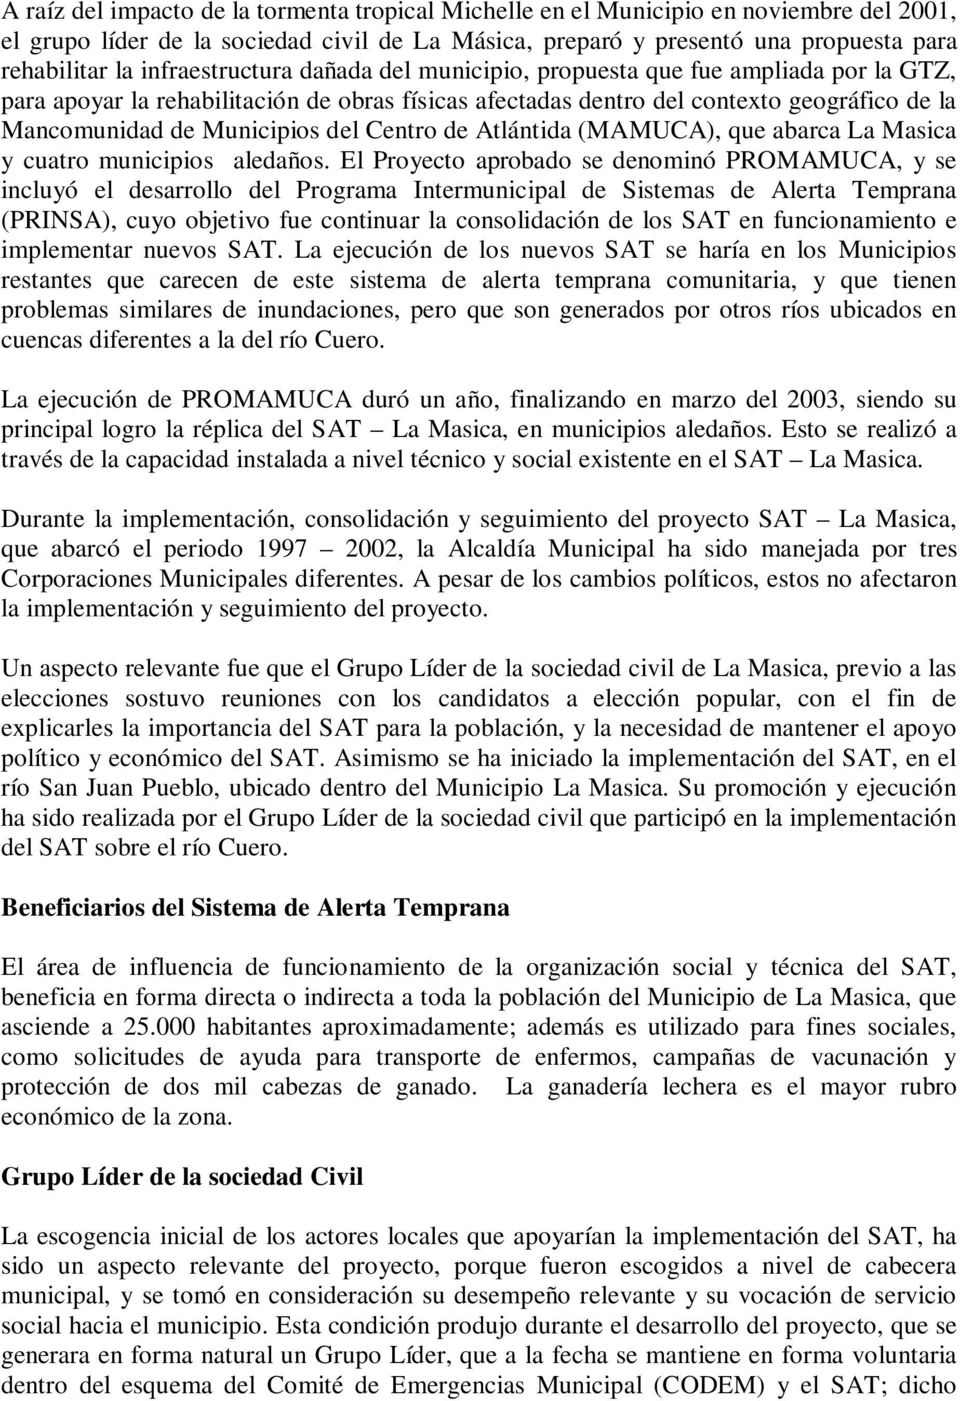 del Centro de Atlántida (MAMUCA), que abarca La Masica y cuatro municipios aledaños.